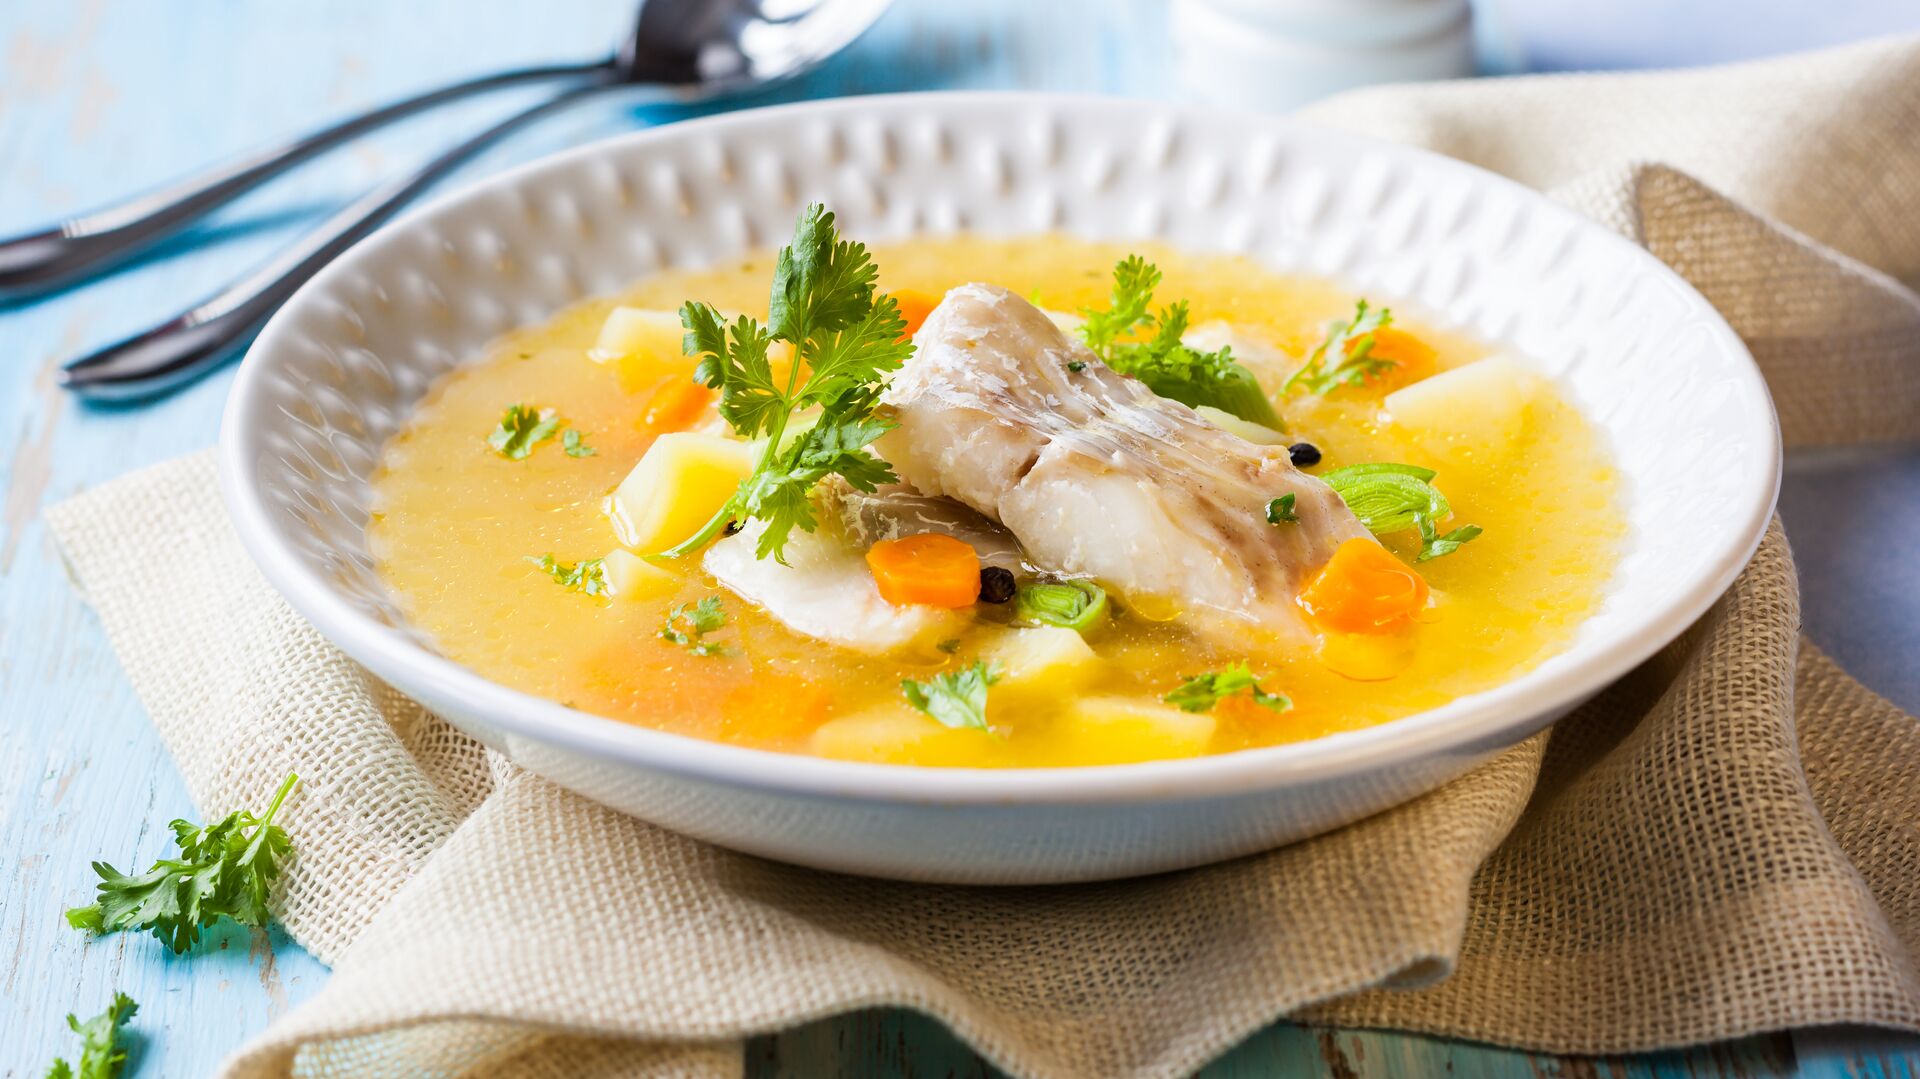 Супы – Рецепты супов. Рецепты с фото